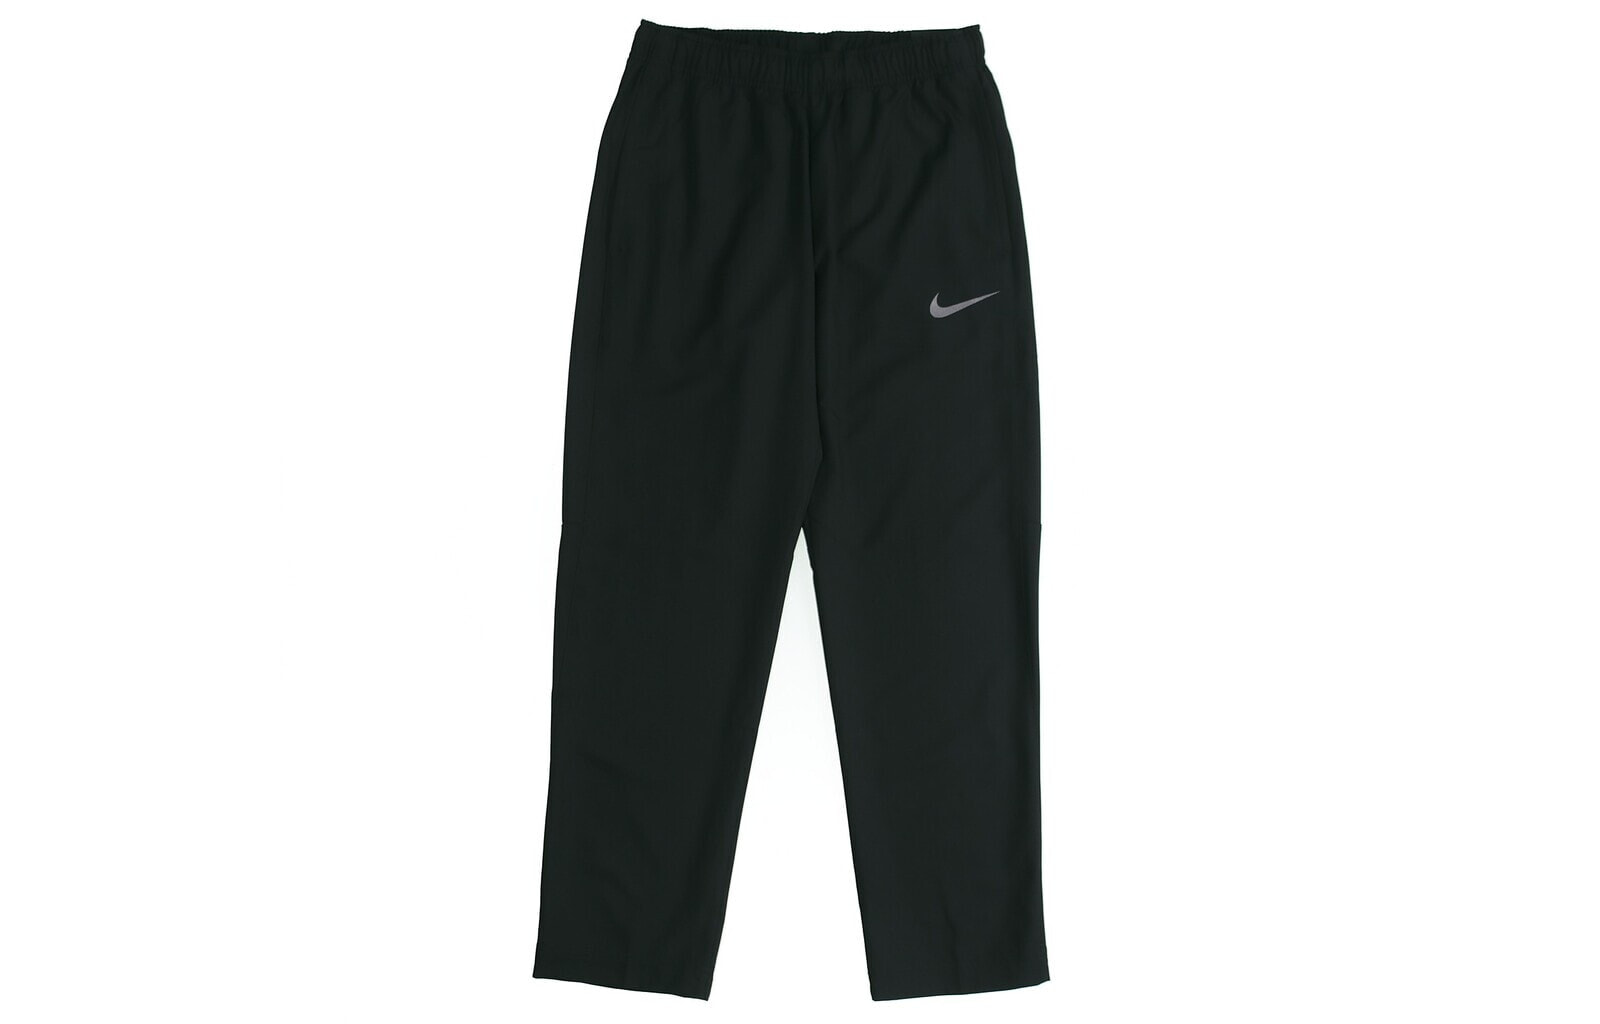 Nike As M Nk Dry Pant Team Woven 梭织跑步训练运动长裤 春季 男款 黑色 / Брюки Nike Team Woven 927381-013